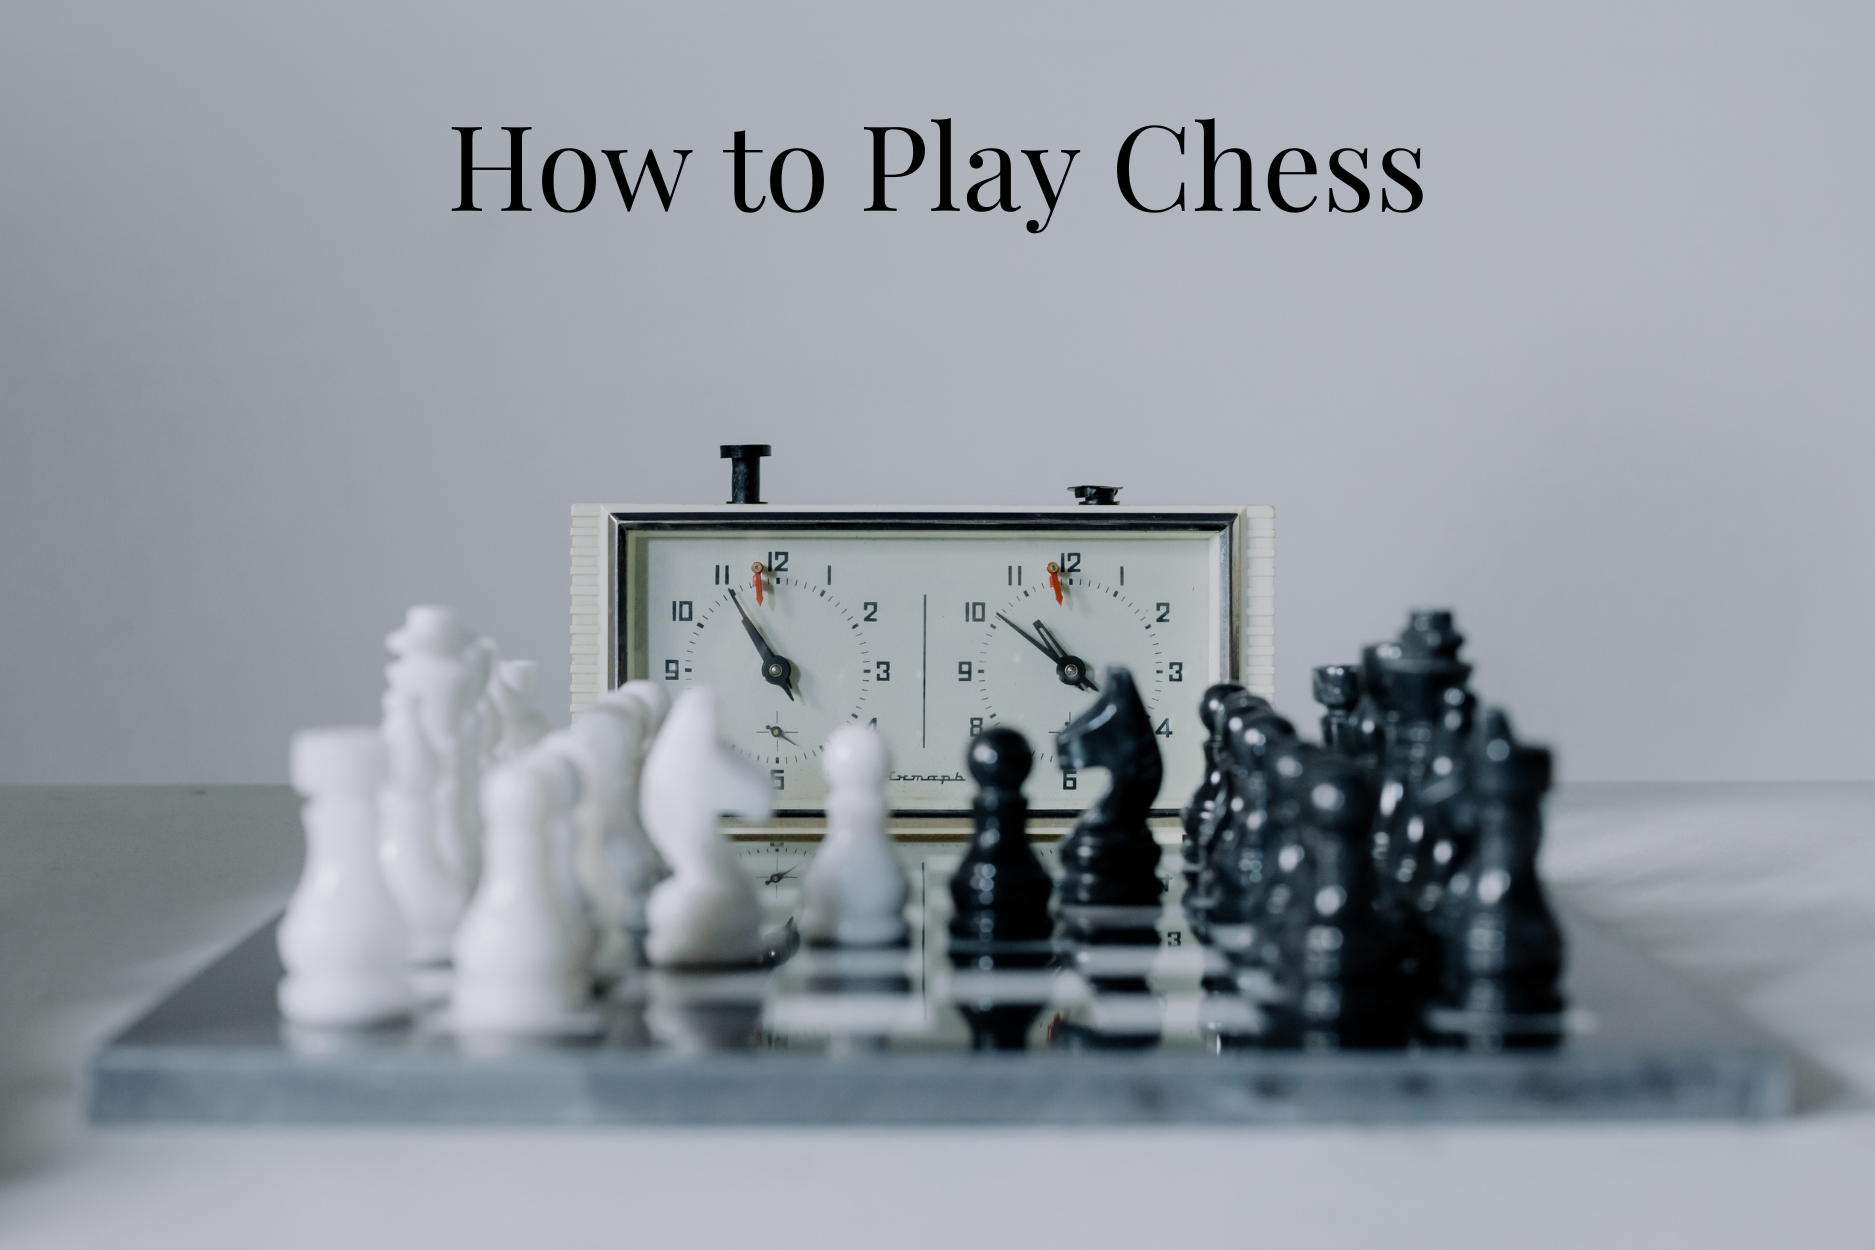 Beginning Chess Play